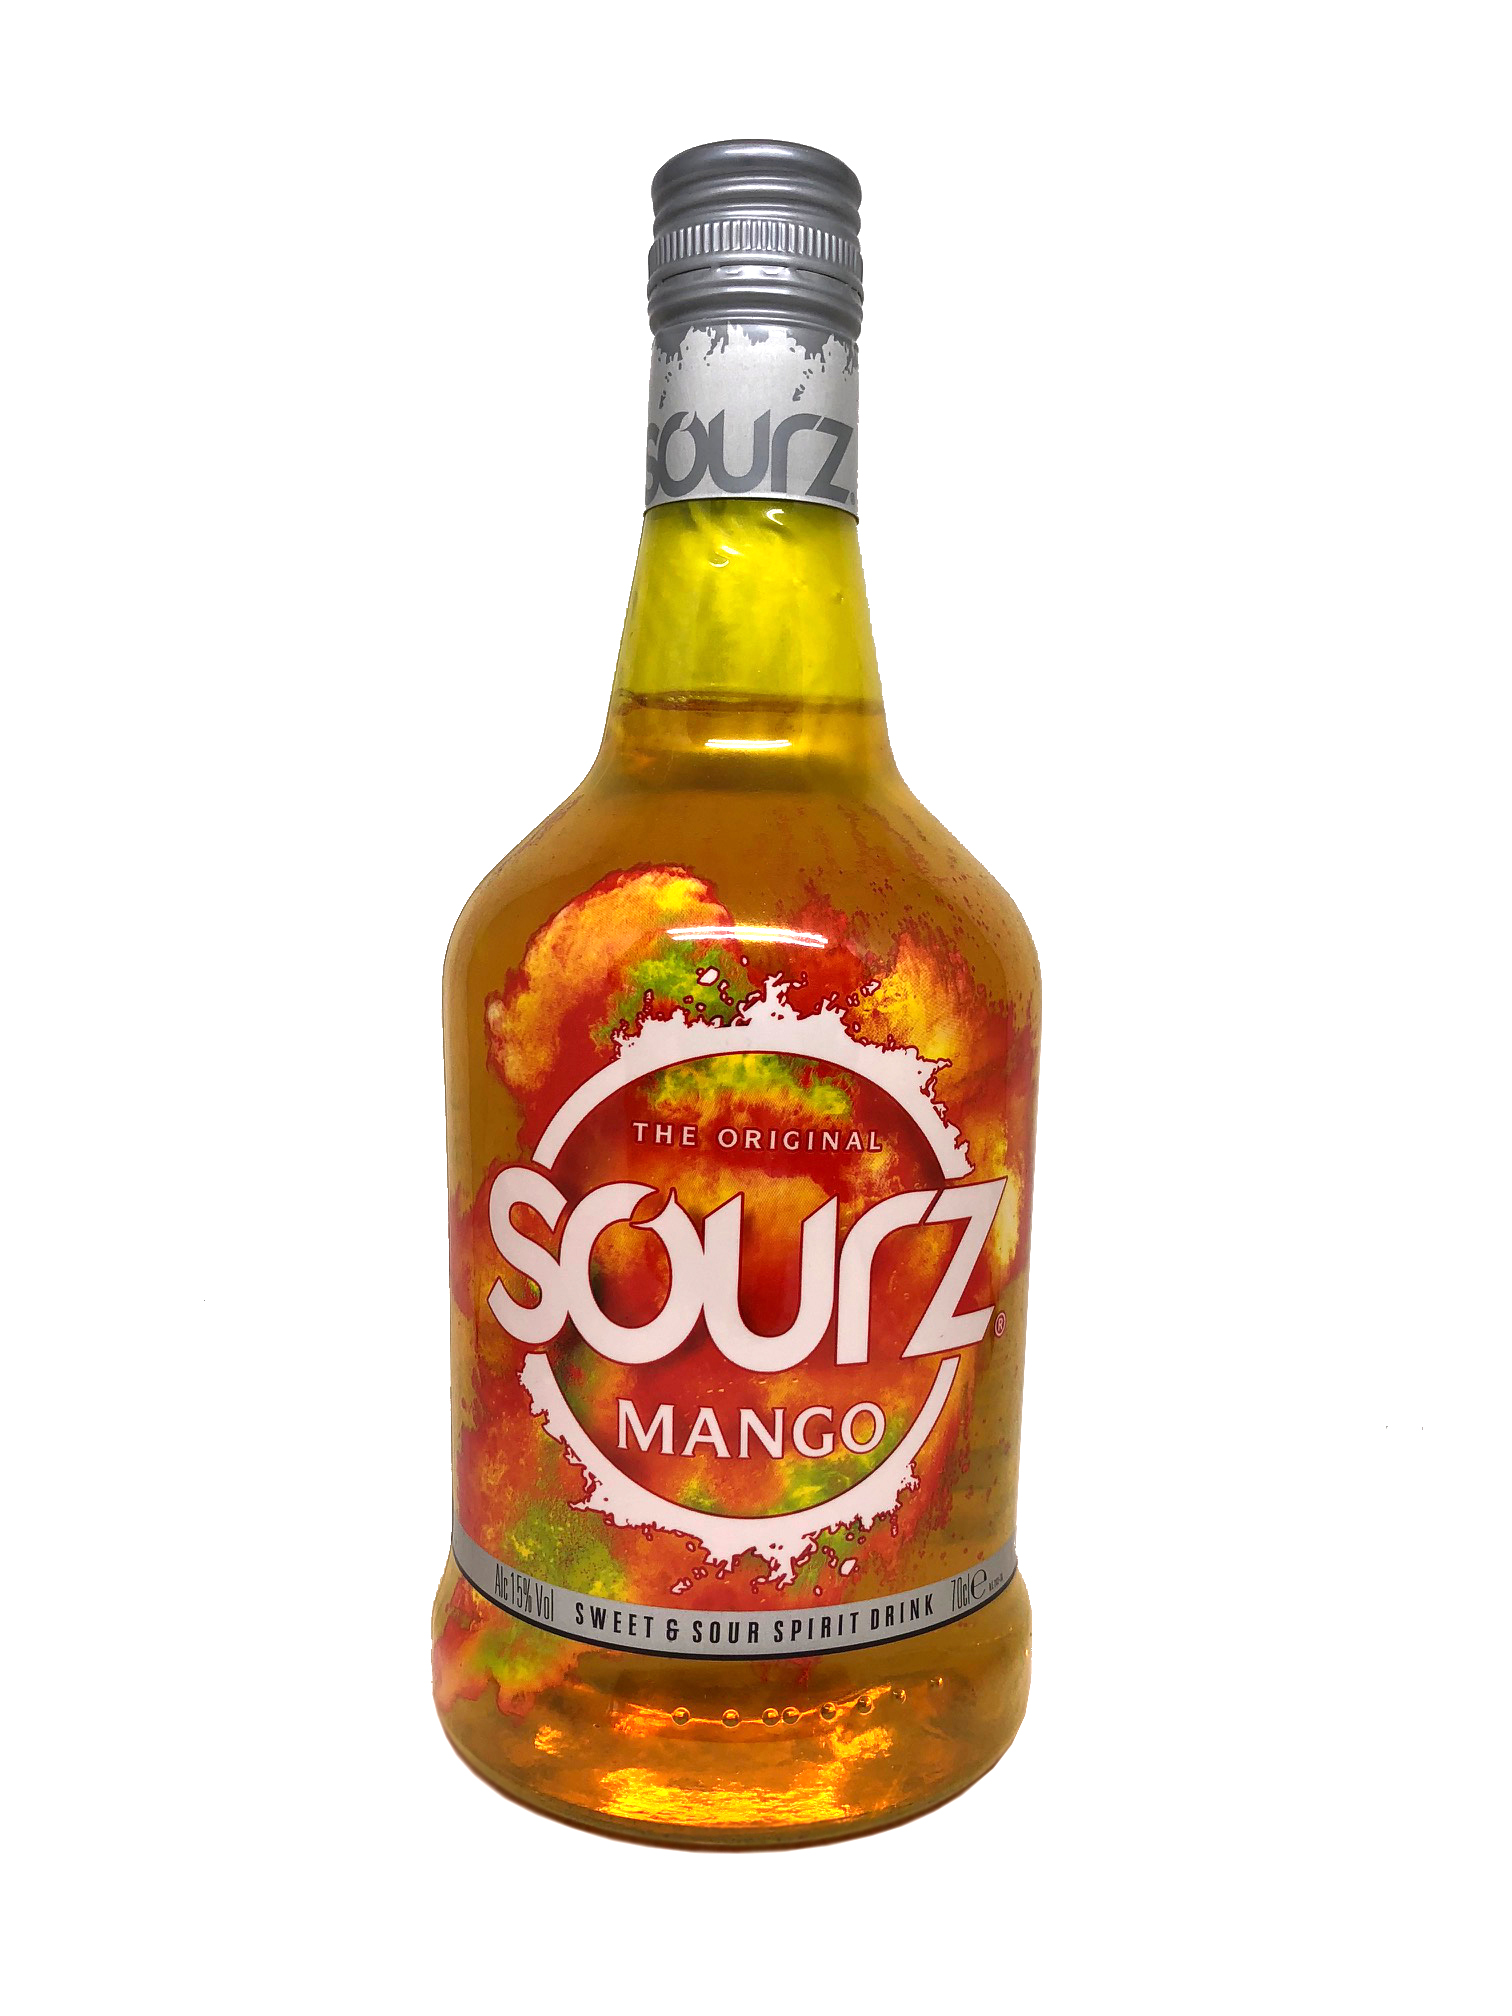 Sourz Mango Mangolikör 15%vol. 0,7l